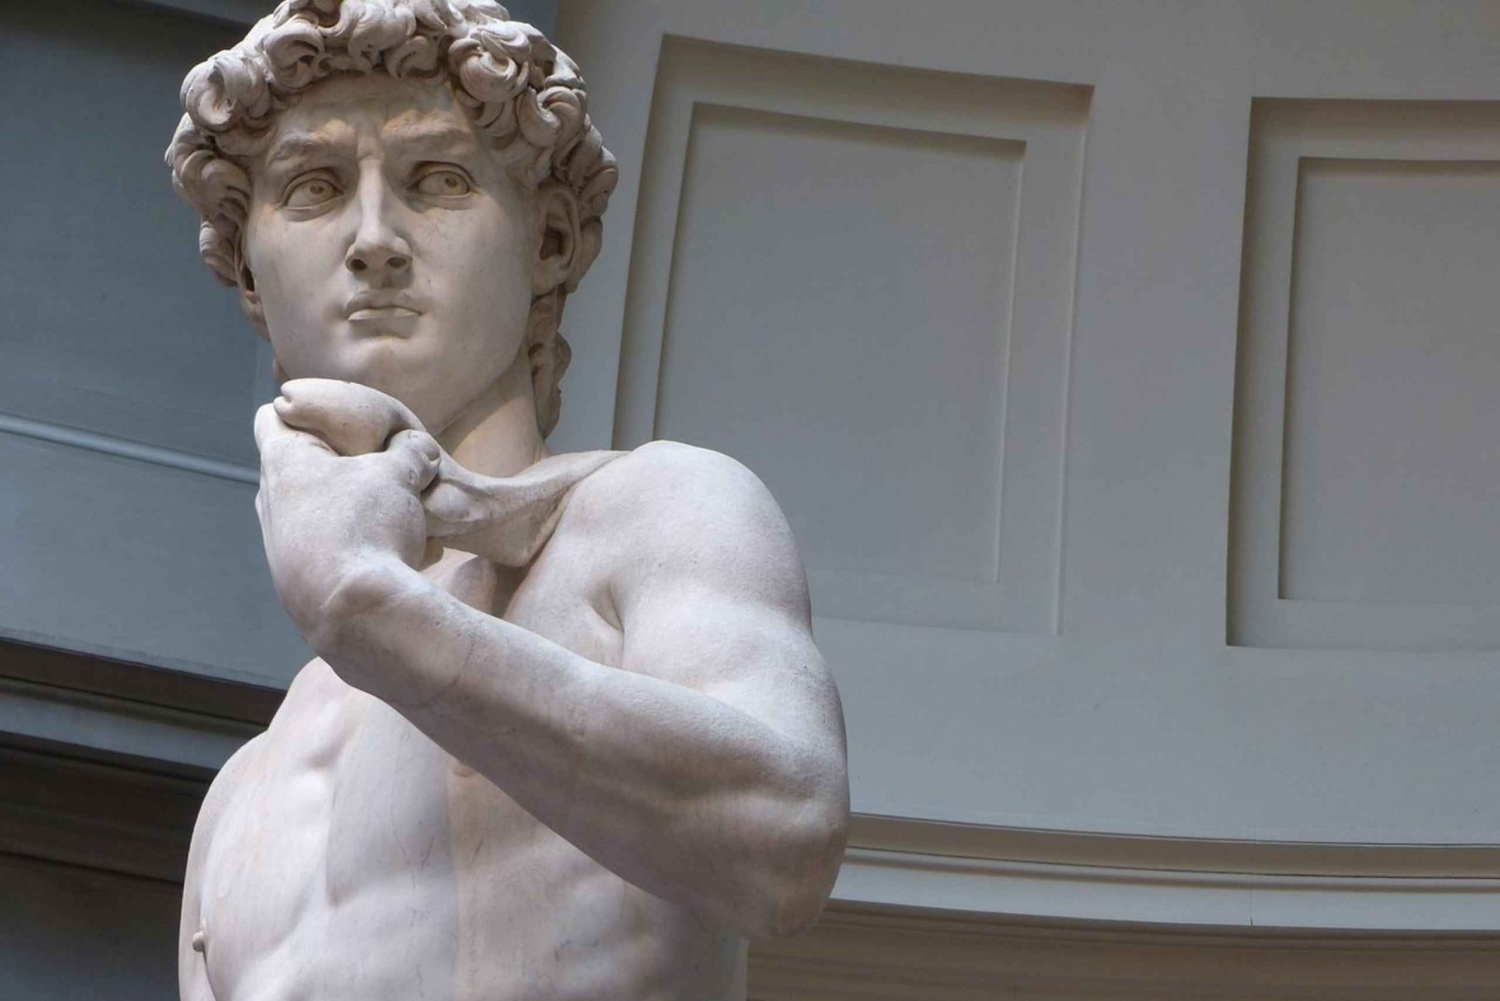 Firenze: Tur for børn med Michelangelo Davidsstatue